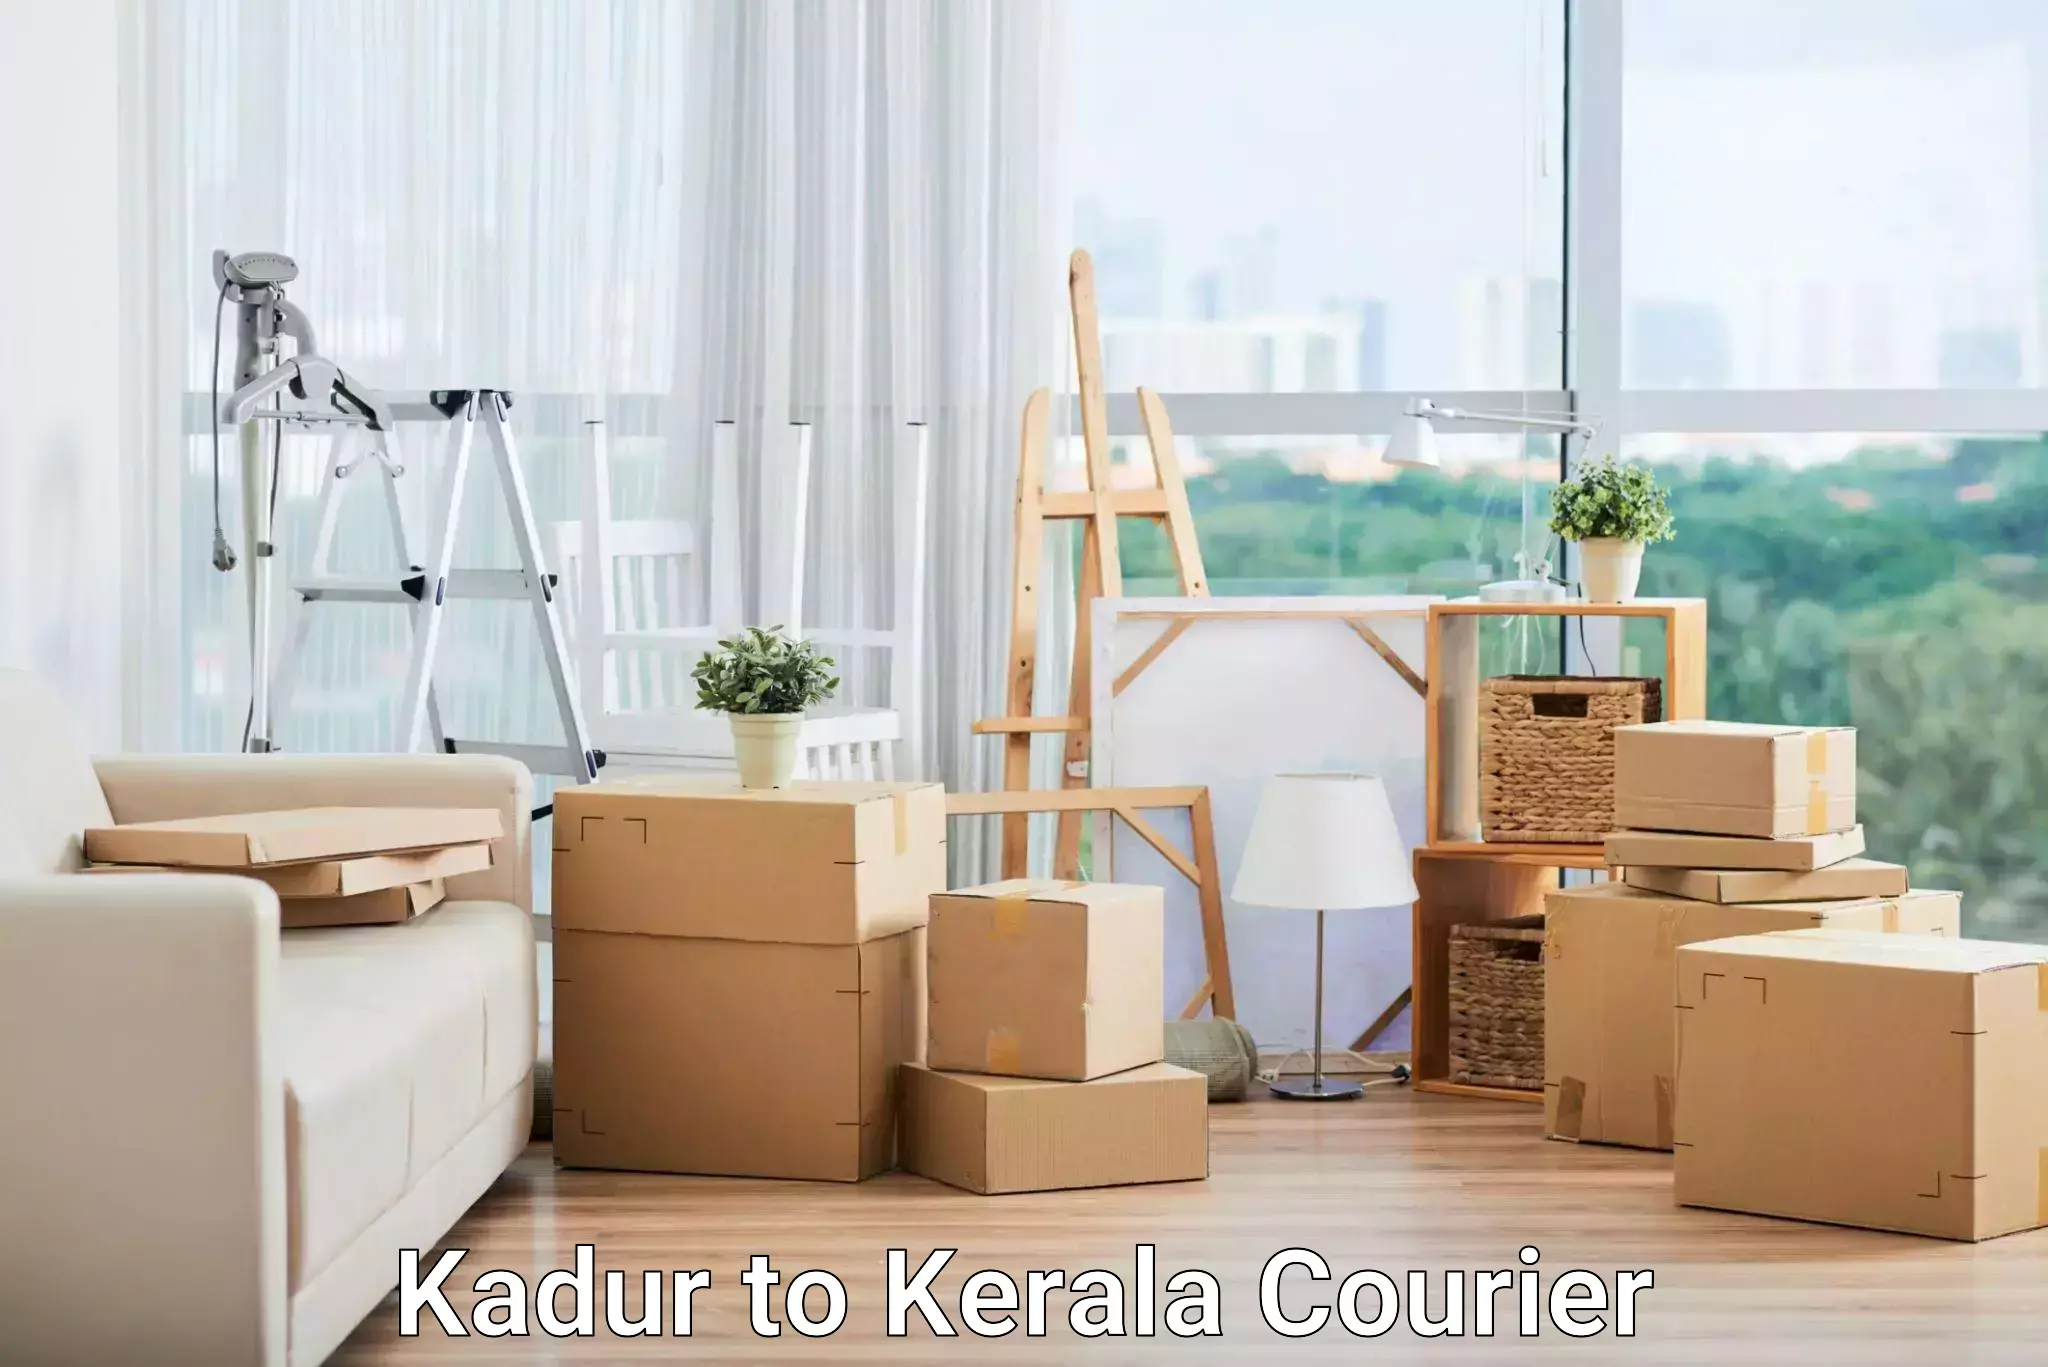 Door-to-door freight service Kadur to Kerala